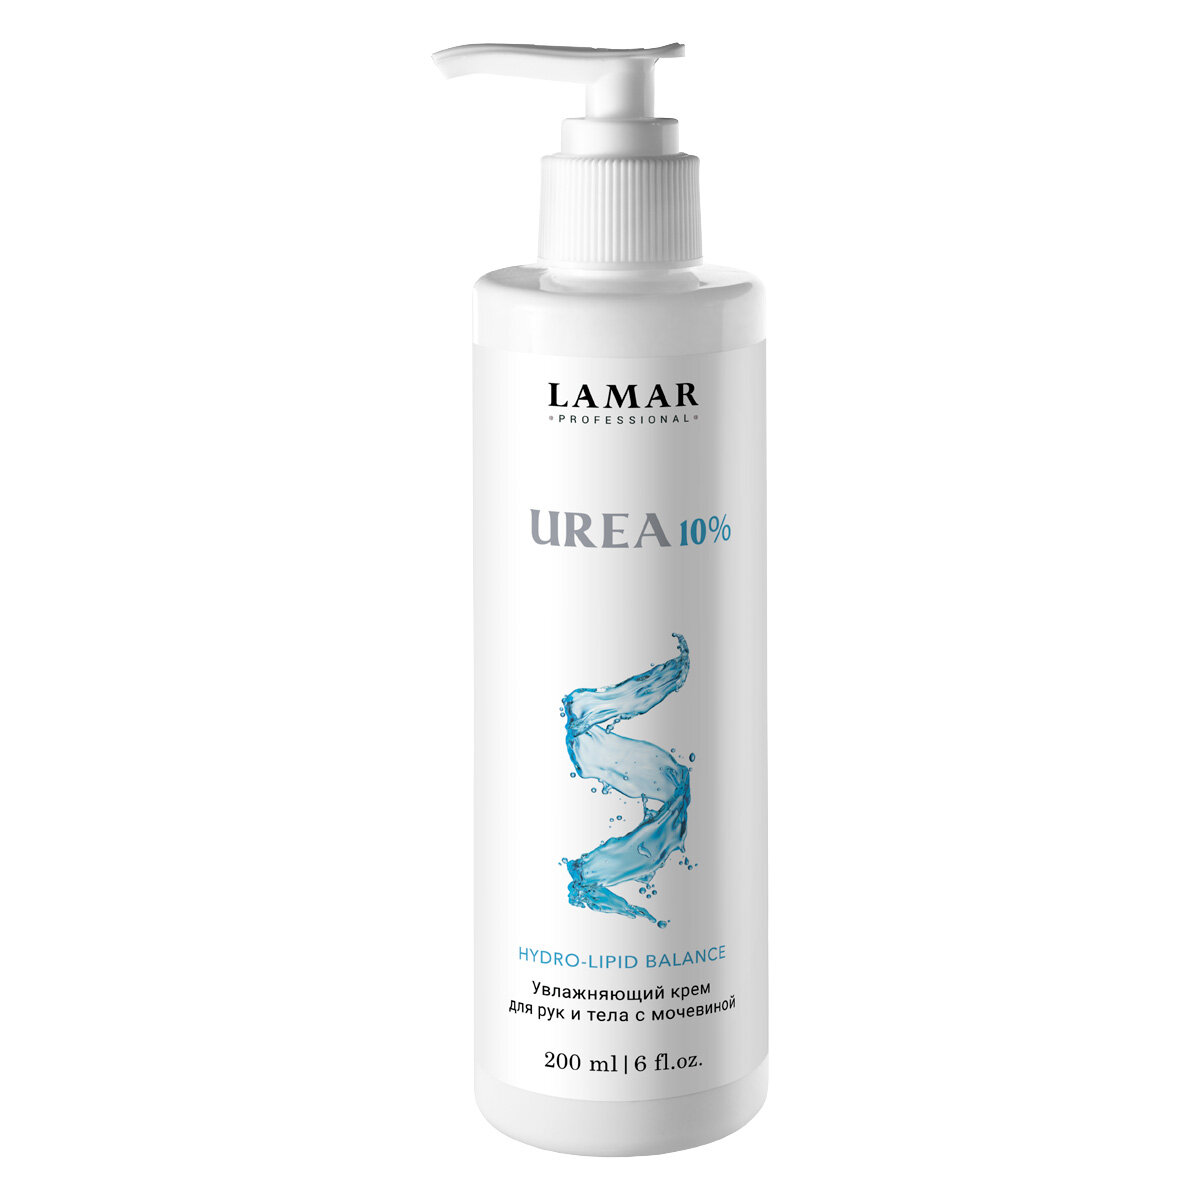 Lamar Professional, Крем для рук и тела Urea 10% , 200 мл